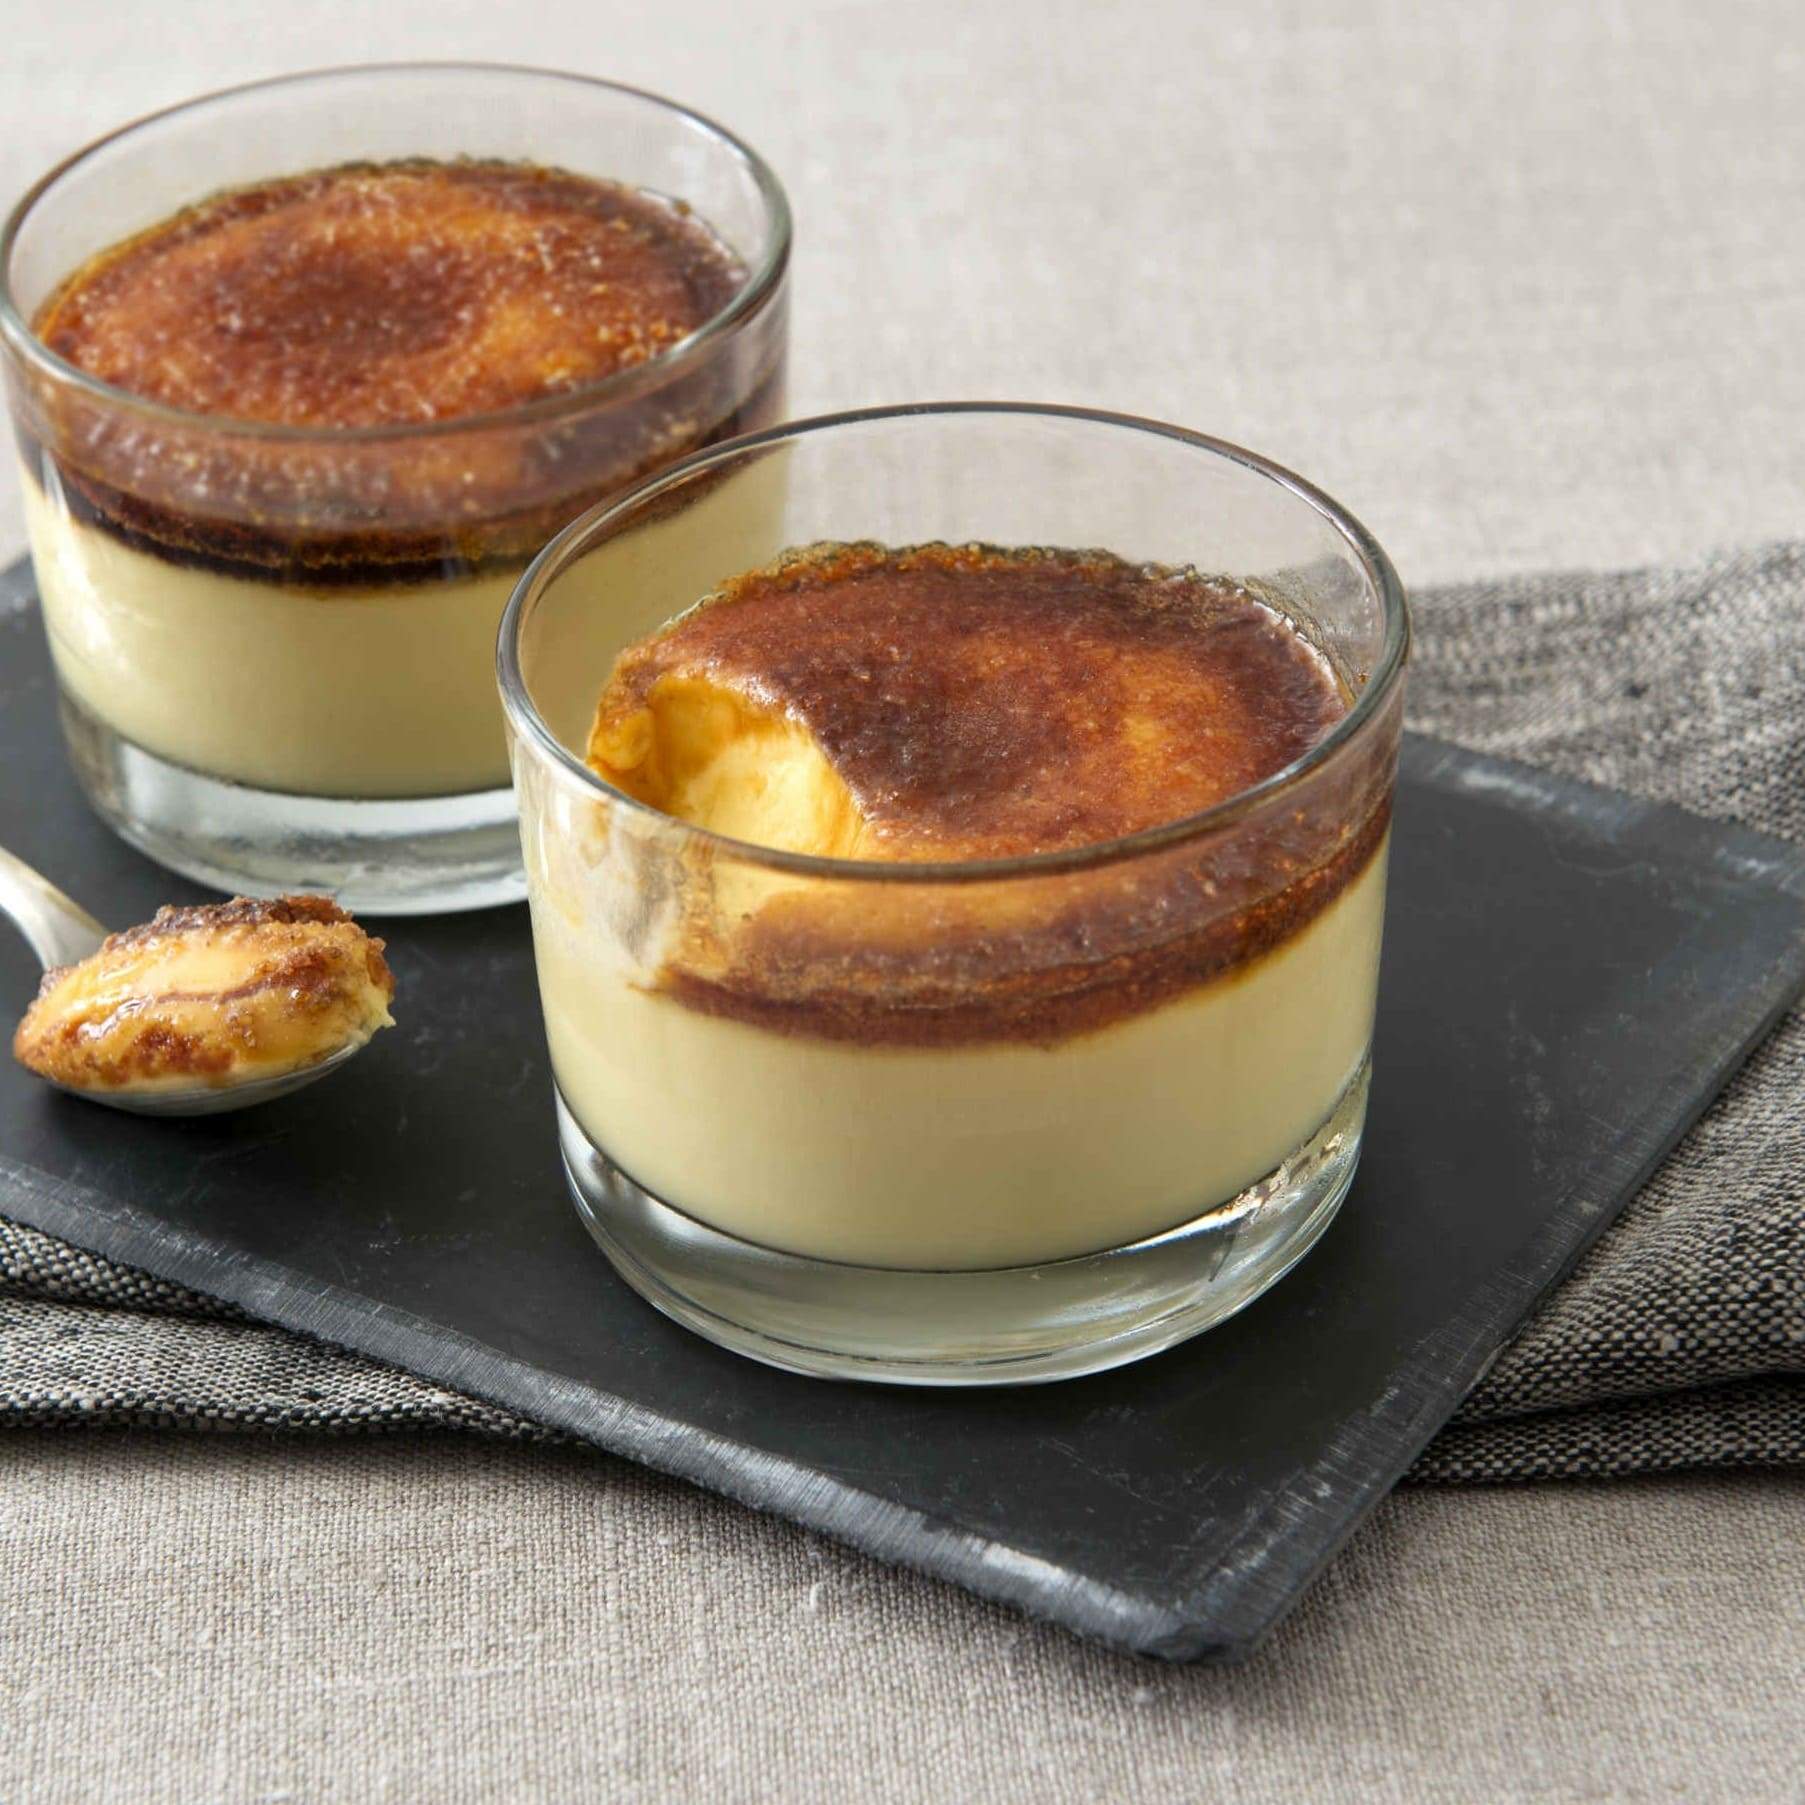 Crema Catalana Bindi: in un'elegante coppa in vetro, tutto il gusto del dessert tipico della catalogna, con una deliziosa crema all'uovo decorata con zucchero caramellato.